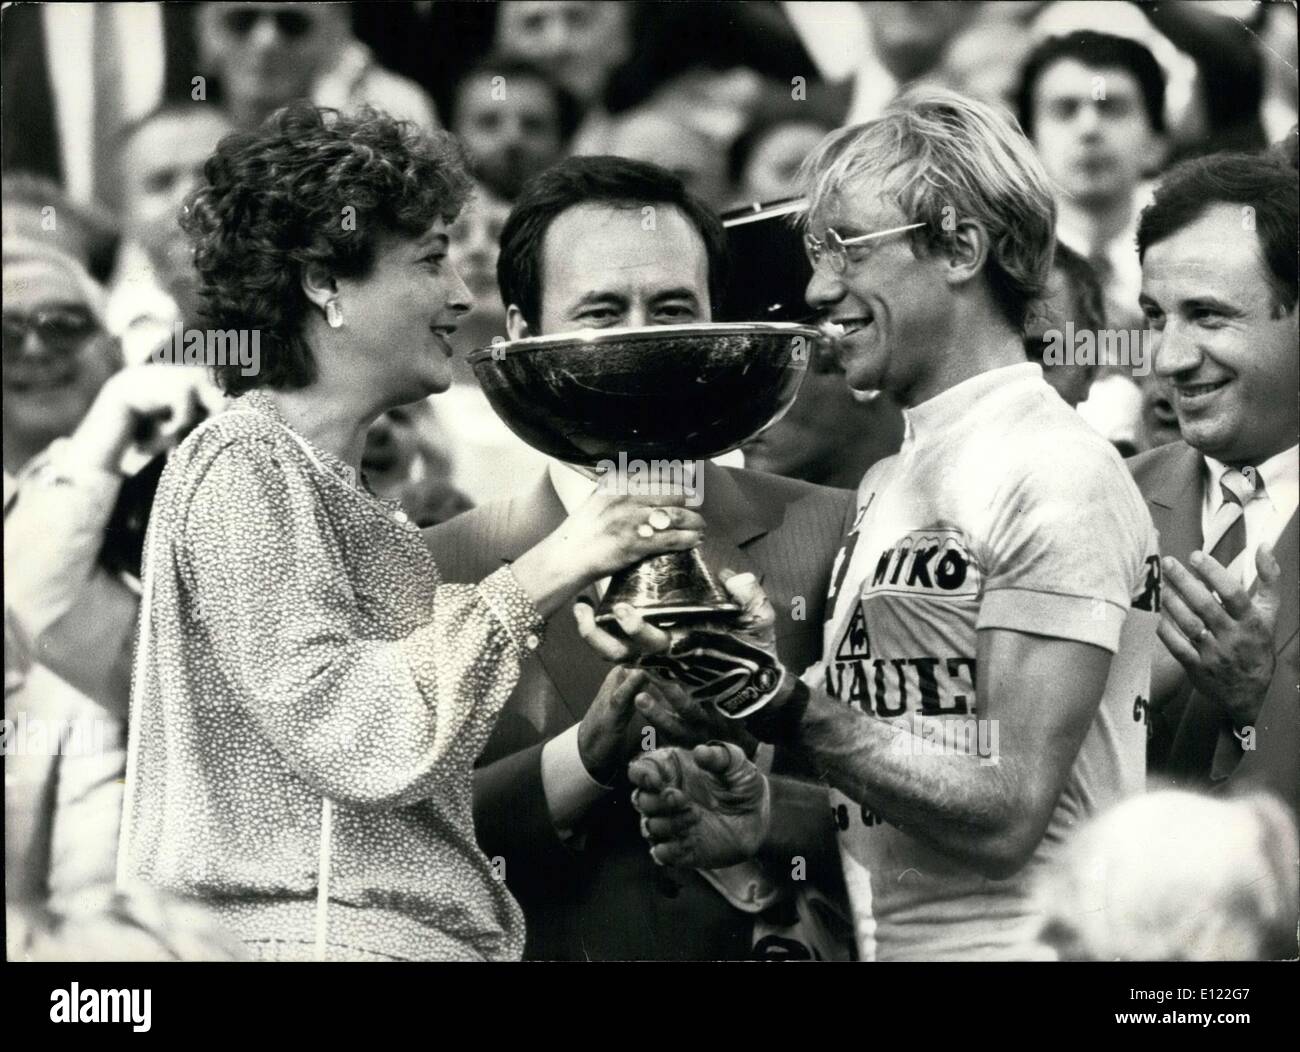 Juillet 25, 1983 - Vainqueur du Tour de France : Laurent Fignon Banque D'Images